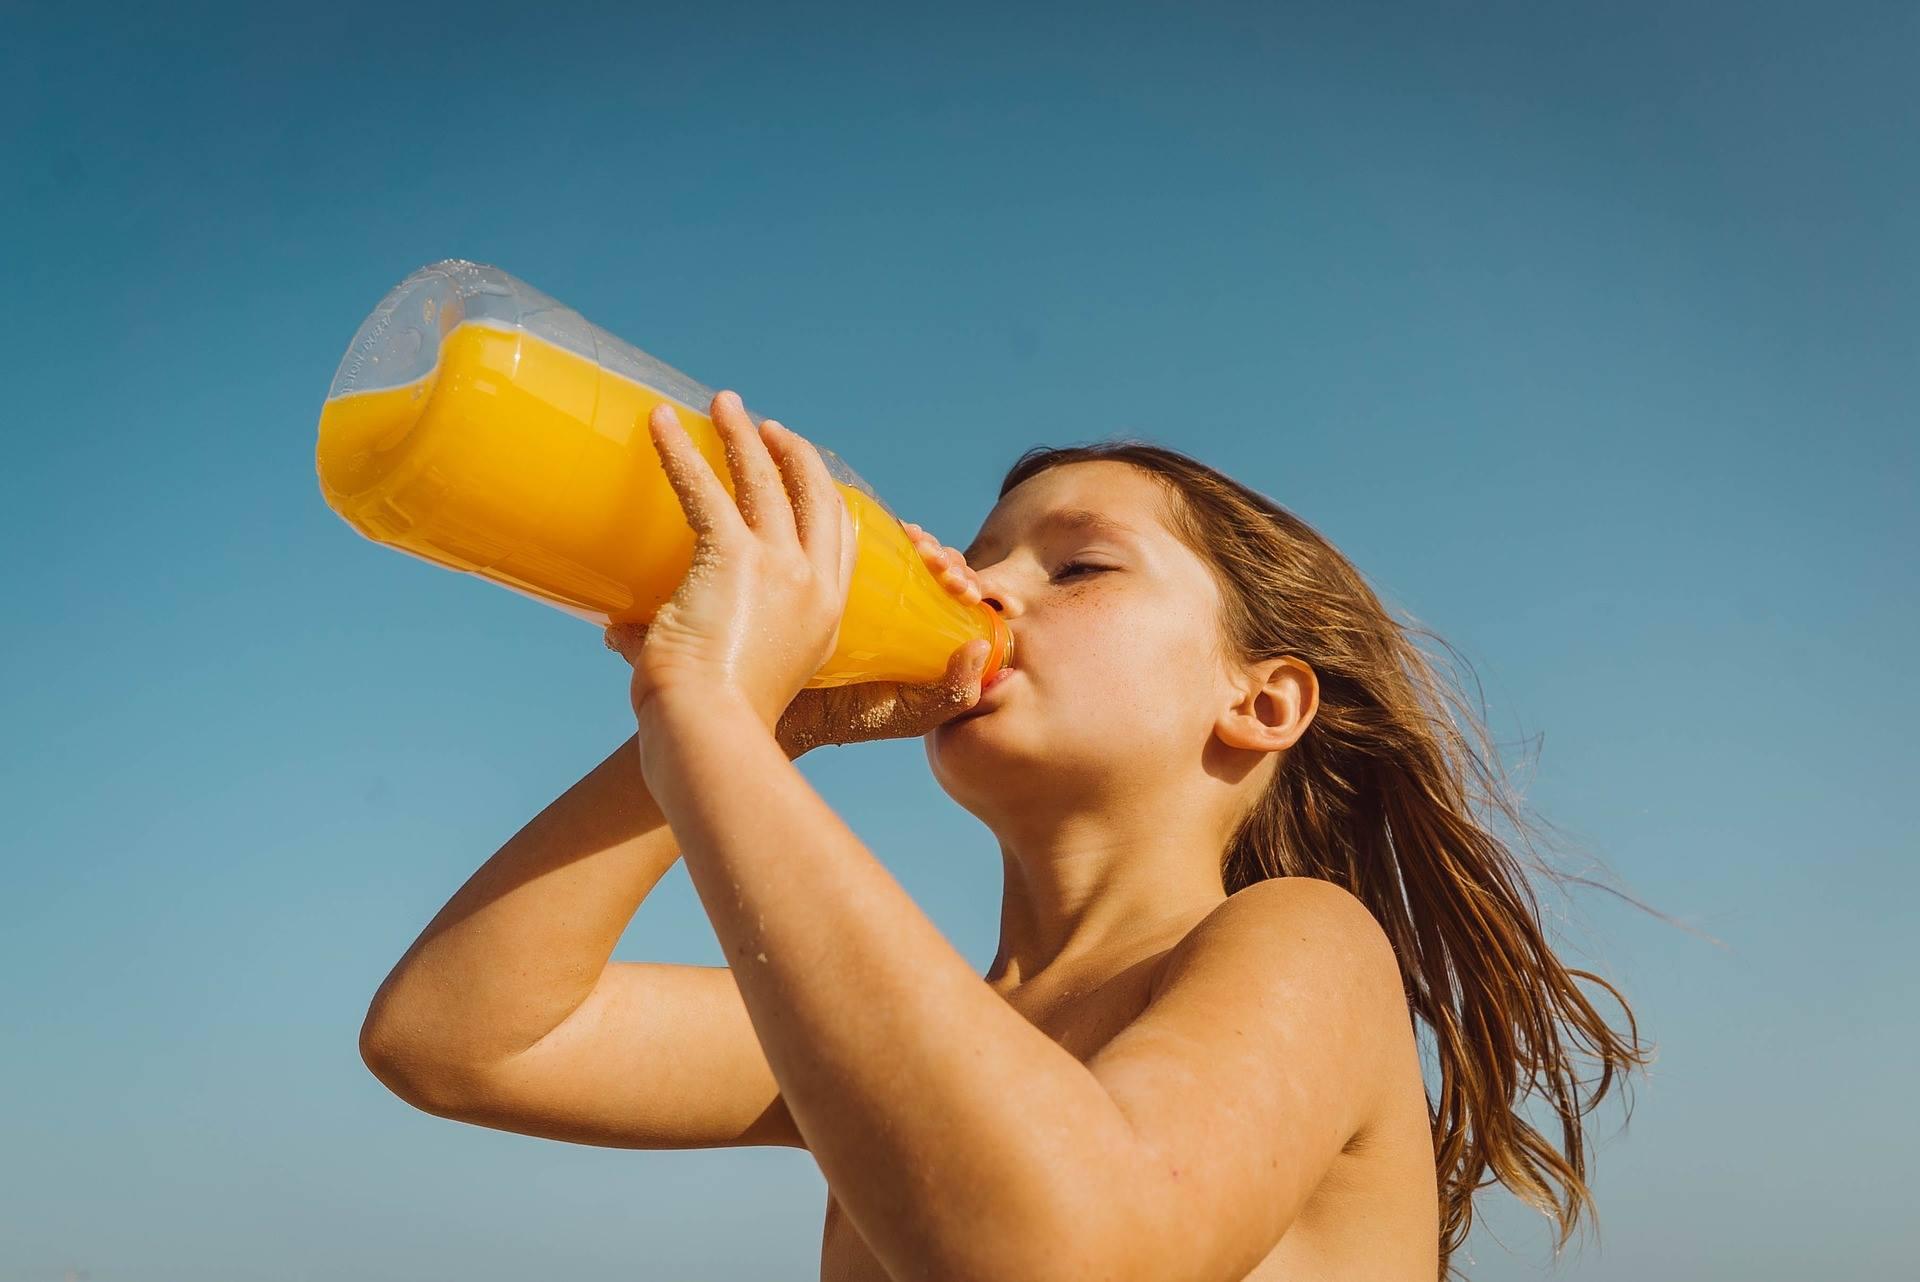 ΕΦΕΤ: Ανακαλείται χυμός - Προσοχή μην καταναλωθεί από παιδιά